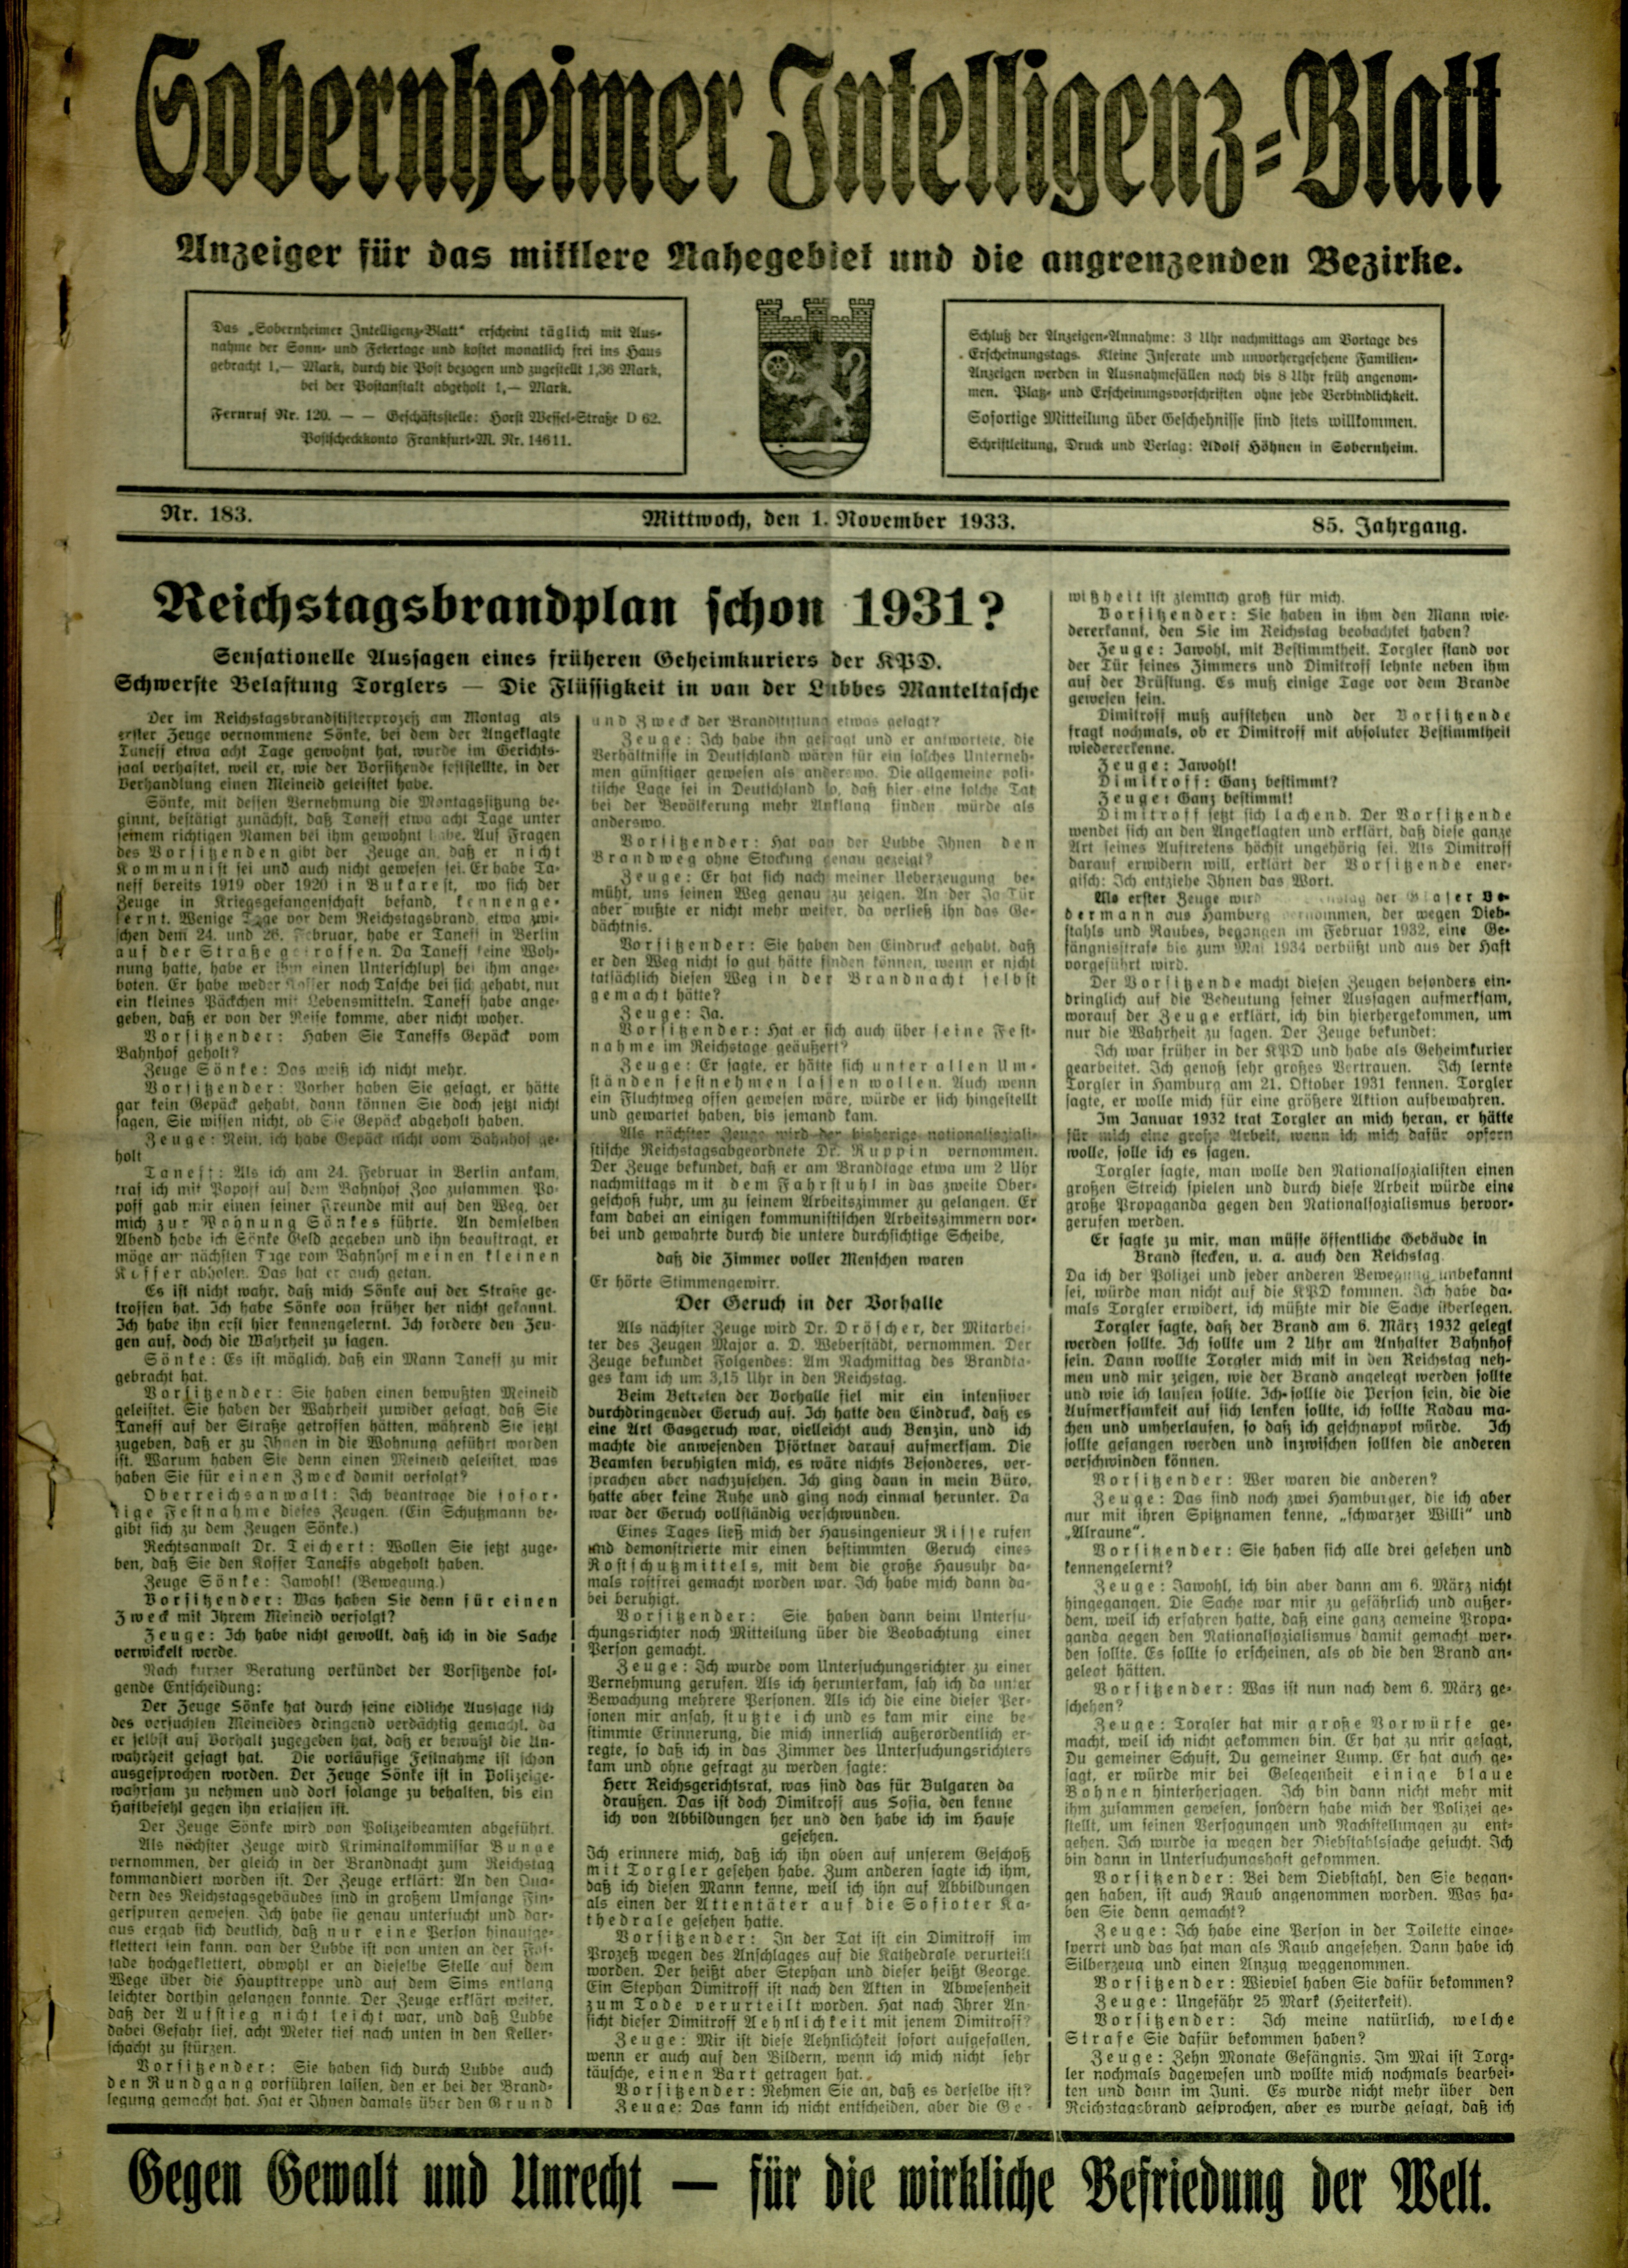 Zeitung: Sobernheimer Intelligenzblatt; November 1933, Jg. 84 Nr. 153 (Heimatmuseum Bad Sobernheim CC BY-NC-SA)